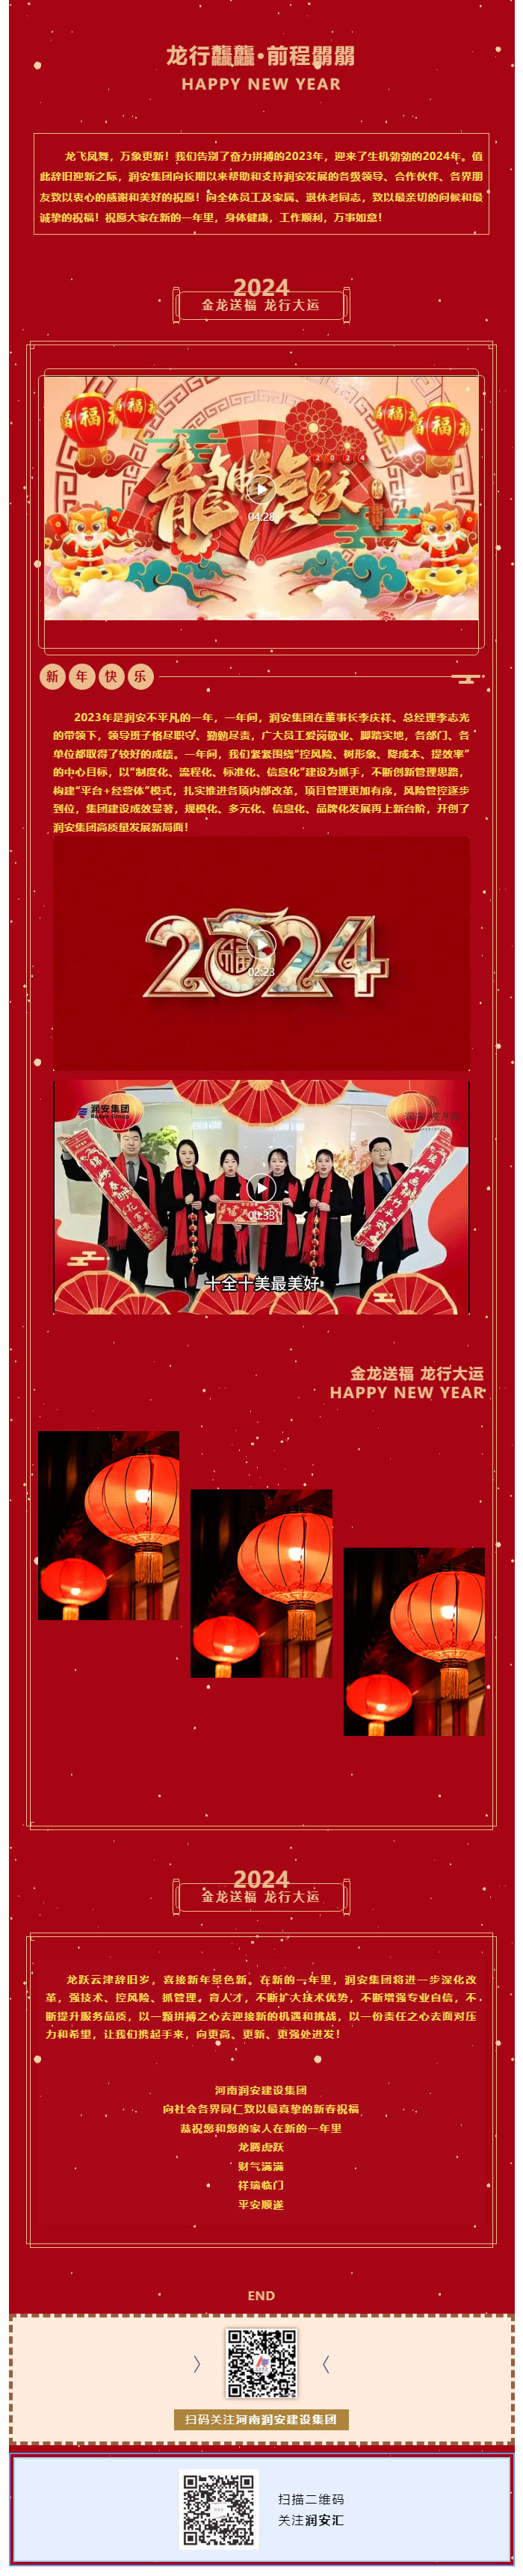 龙行龘龘 前程朤朤 _ 润安集团恭祝大家新春快乐 副本.JPG